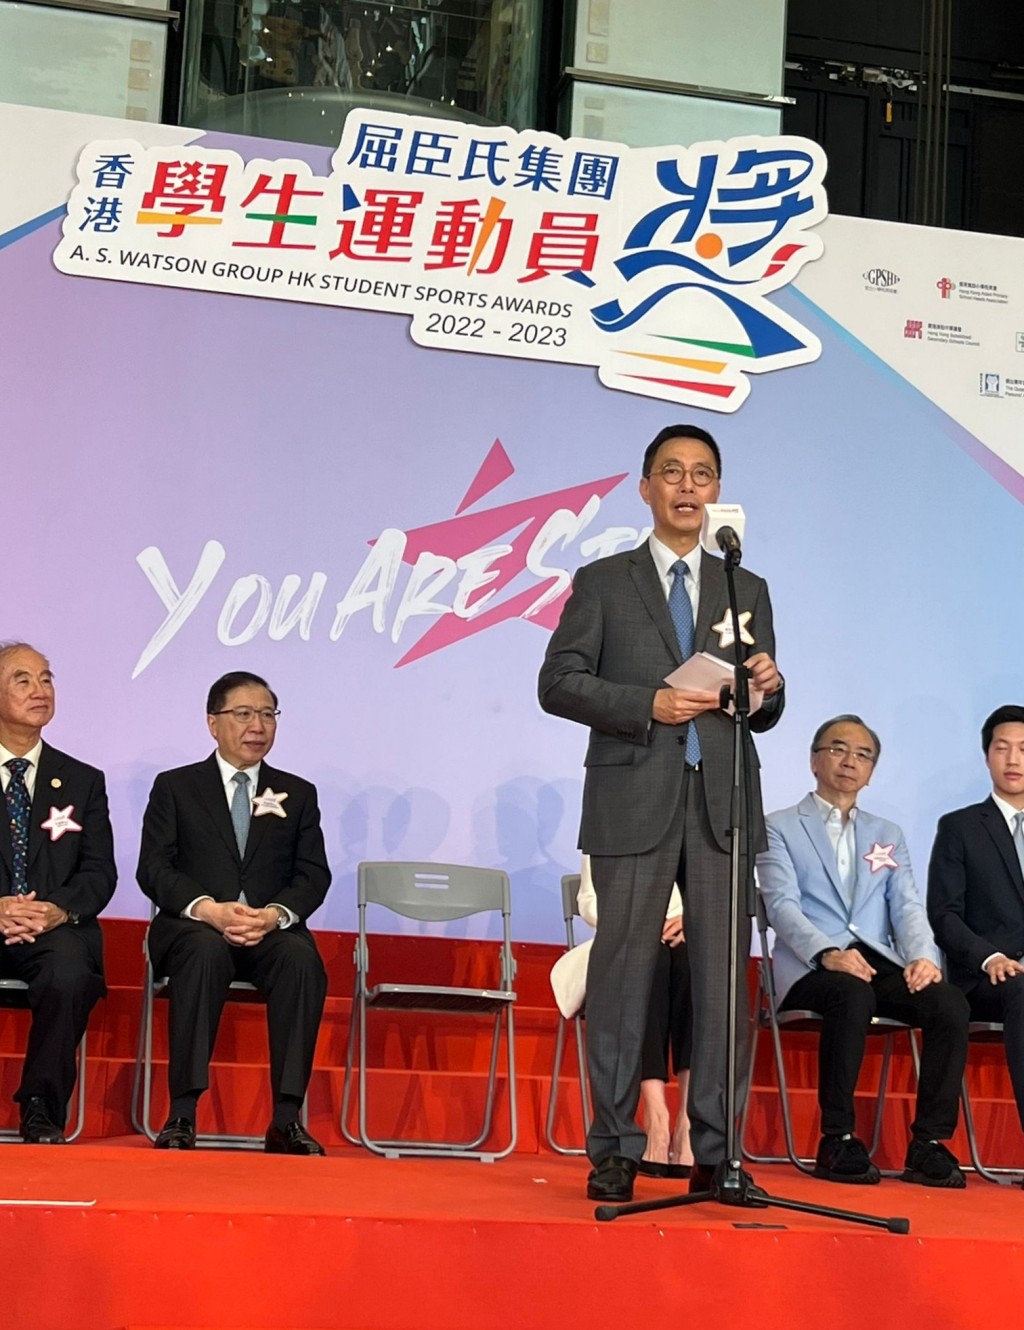 杨润雄出席「屈臣氏集团香港学生运动员奖2022-2023」颁奖典礼。（政府新闻处）